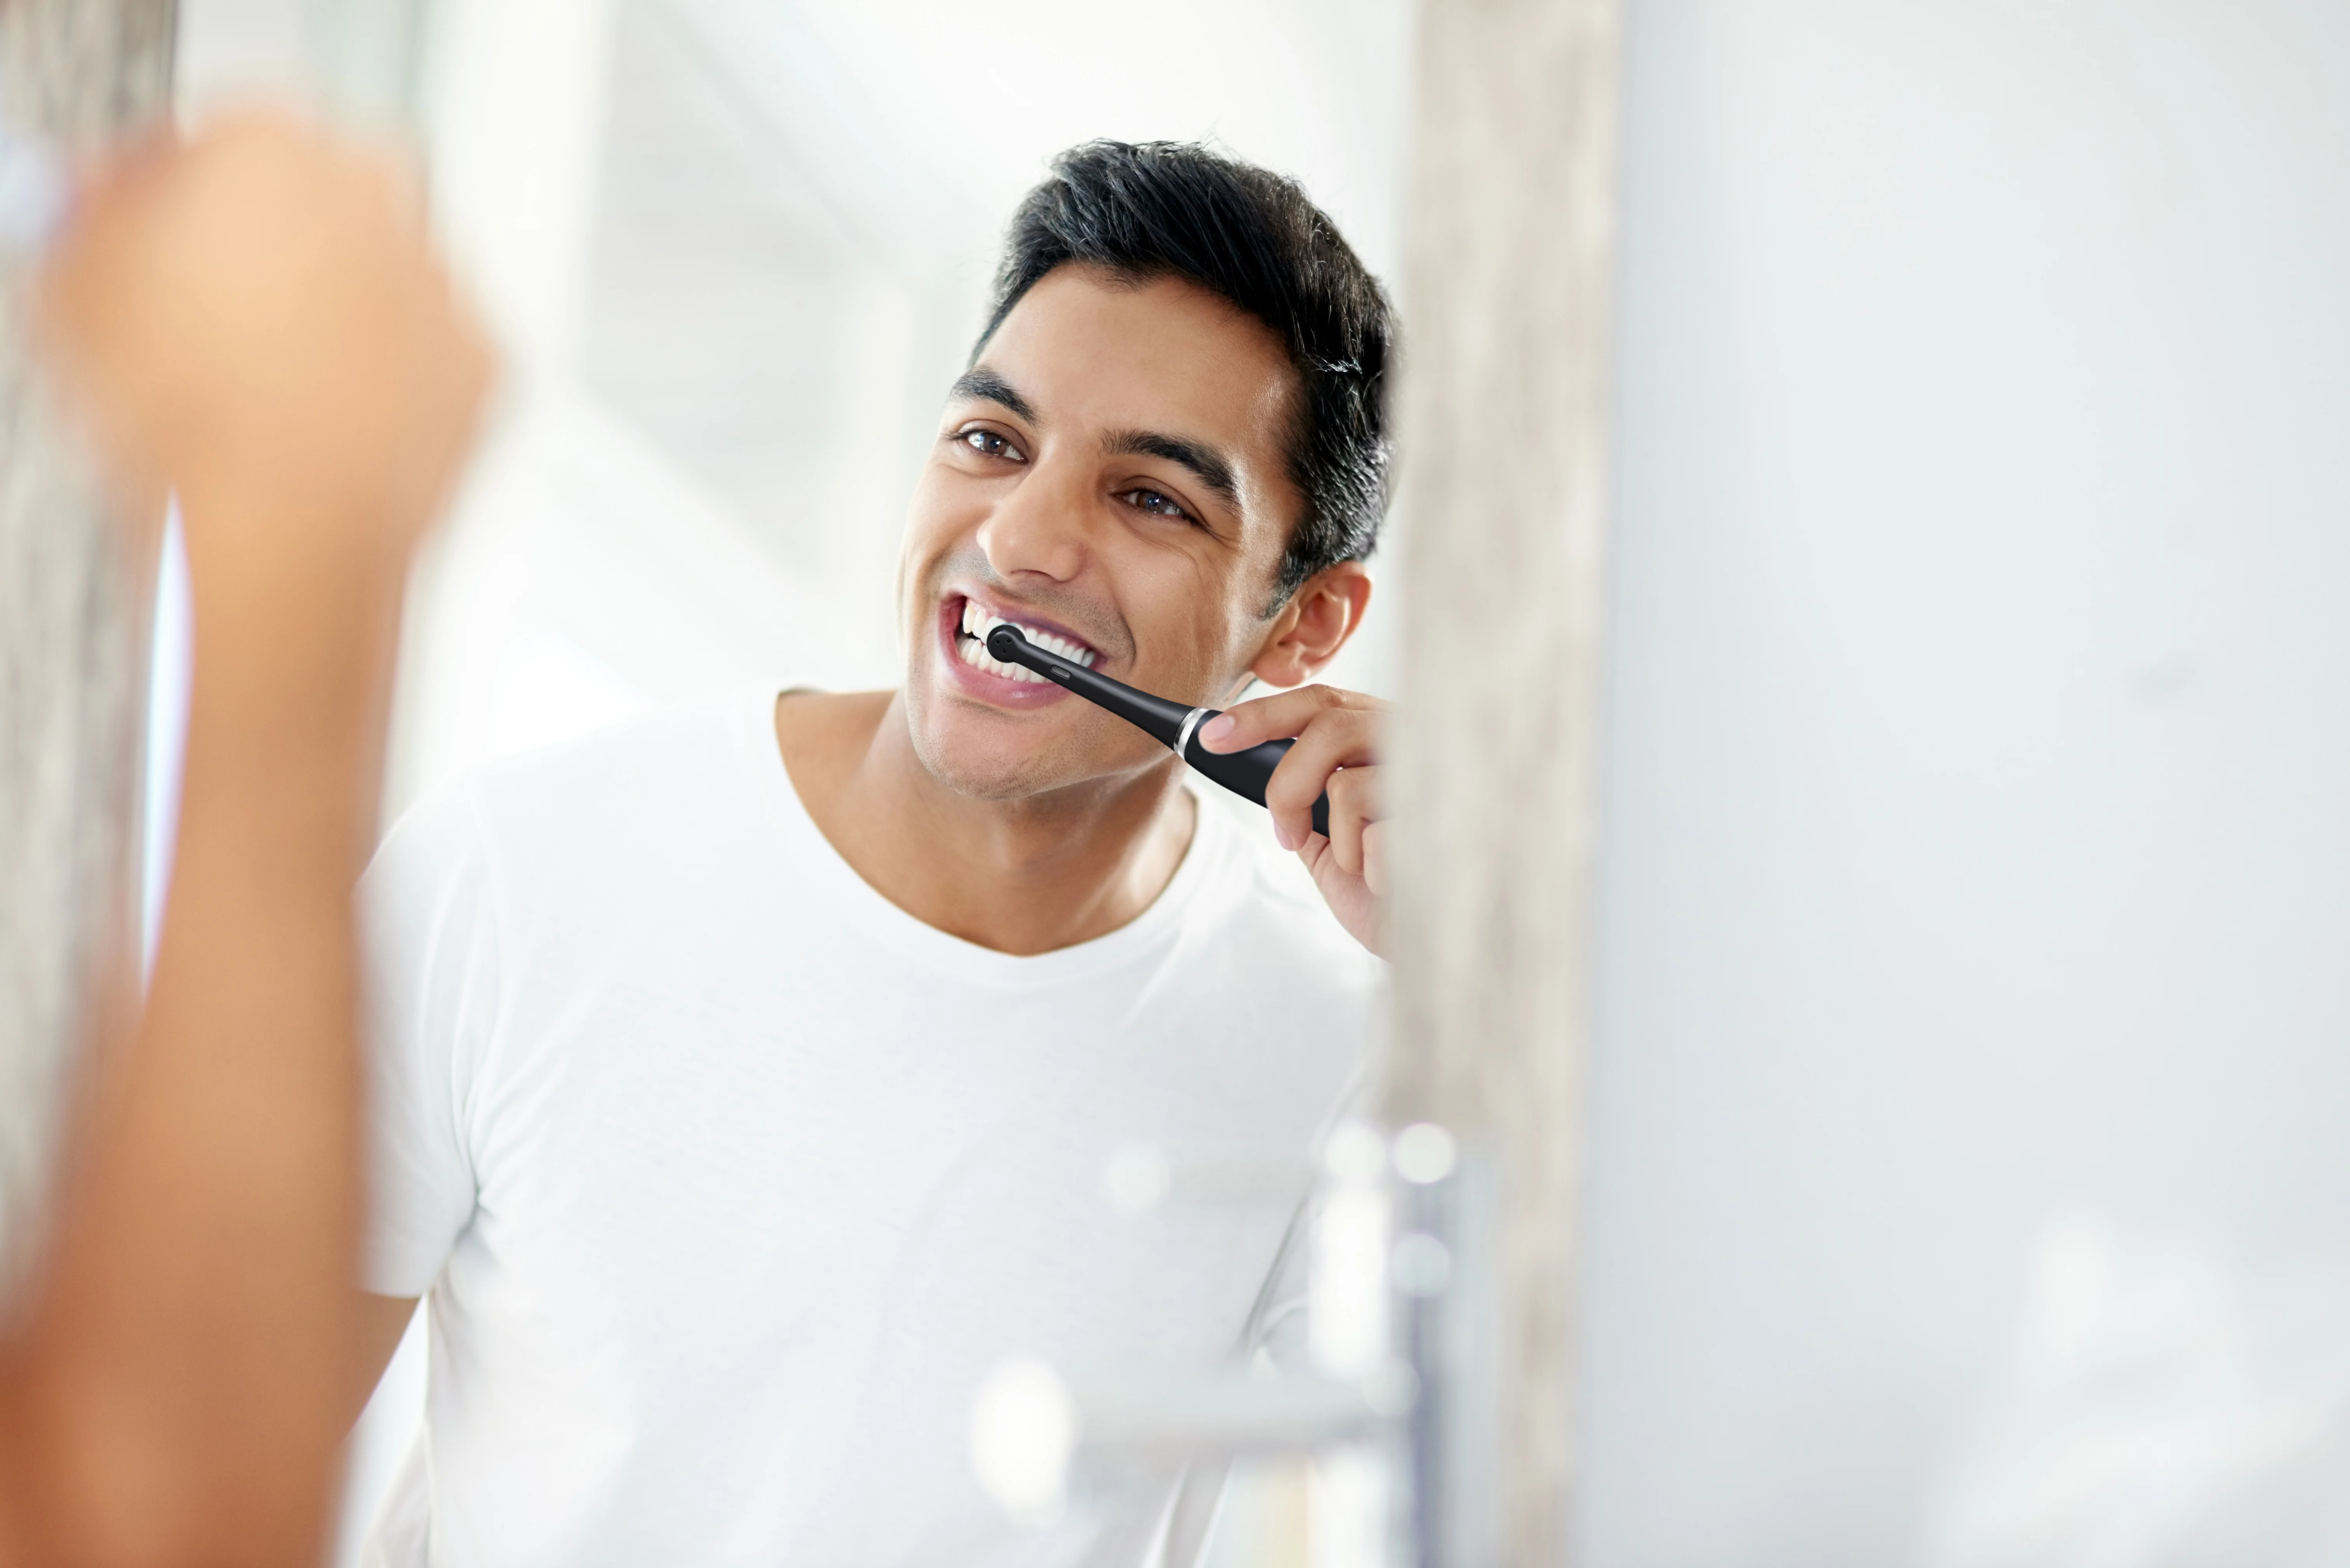 versnelling Trojaanse paard trommel Wat zijn de beste tandpasta's om je tanden witter te maken? | Oral-B